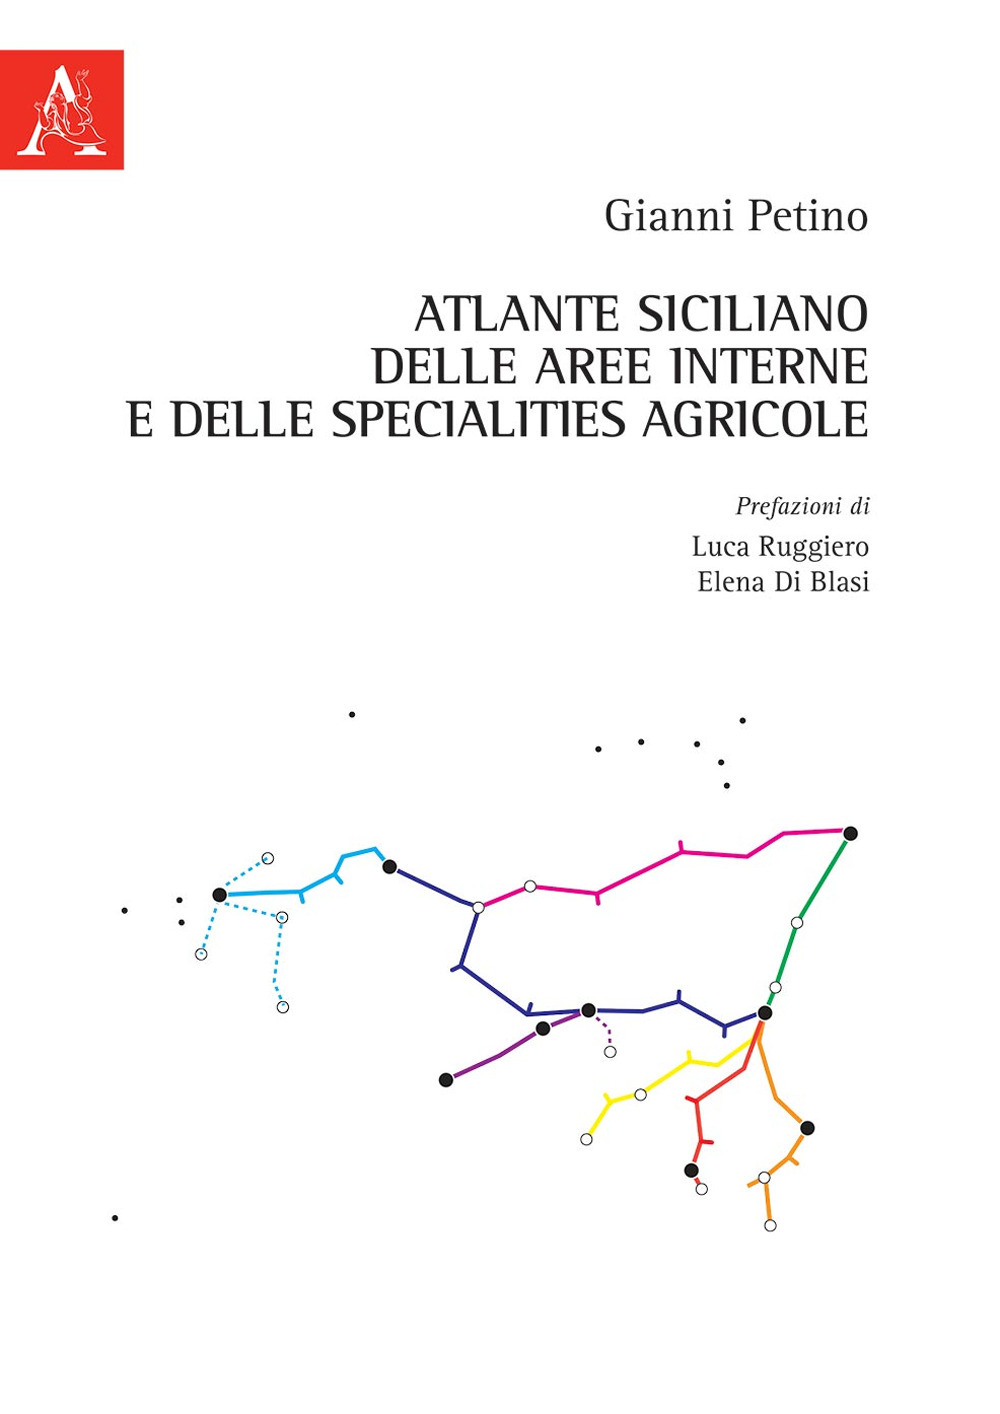 Atlante siciliano delle aree interne e delle specialities agricole